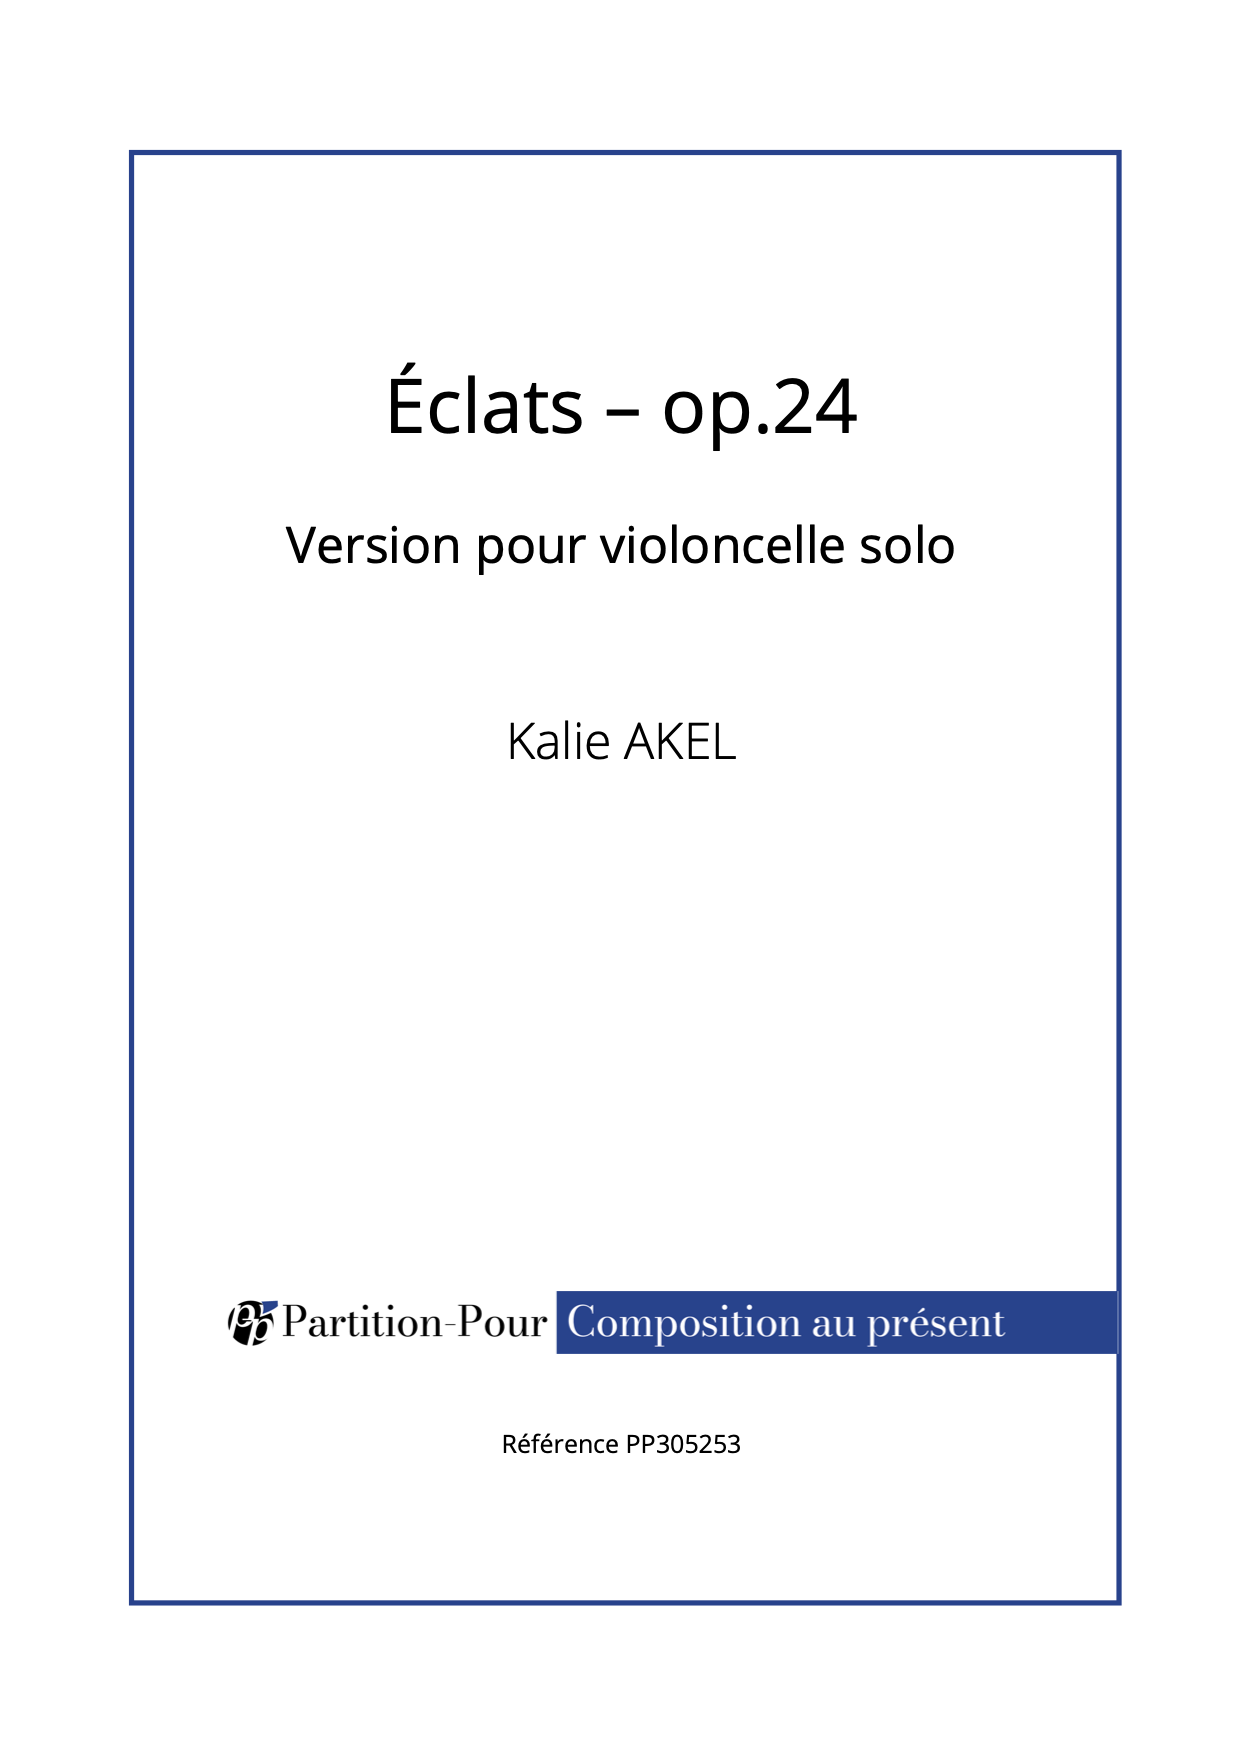 PP305253 - Akel K - Eclats op.24 - violoncelle solo -présentation